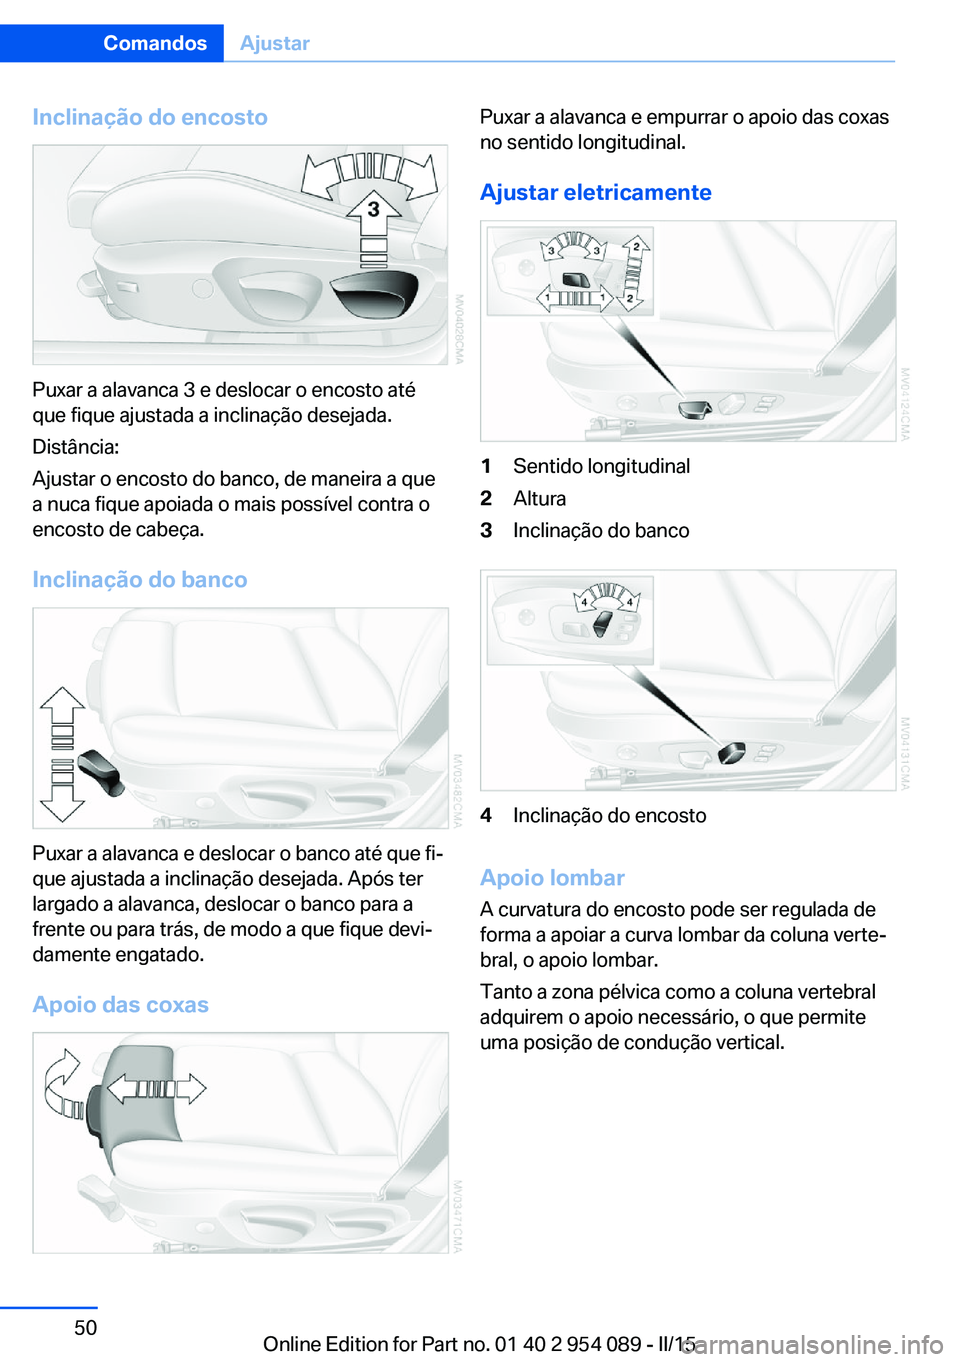 BMW Z4 2016  Manual do condutor (in Portuguese) Inclinação do encosto
Puxar a alavanca 3 e deslocar o encosto até
que fique ajustada a inclinação desejada.
Distância:
Ajustar o encosto do banco, de maneira a que
a nuca fique apoiada o mais po